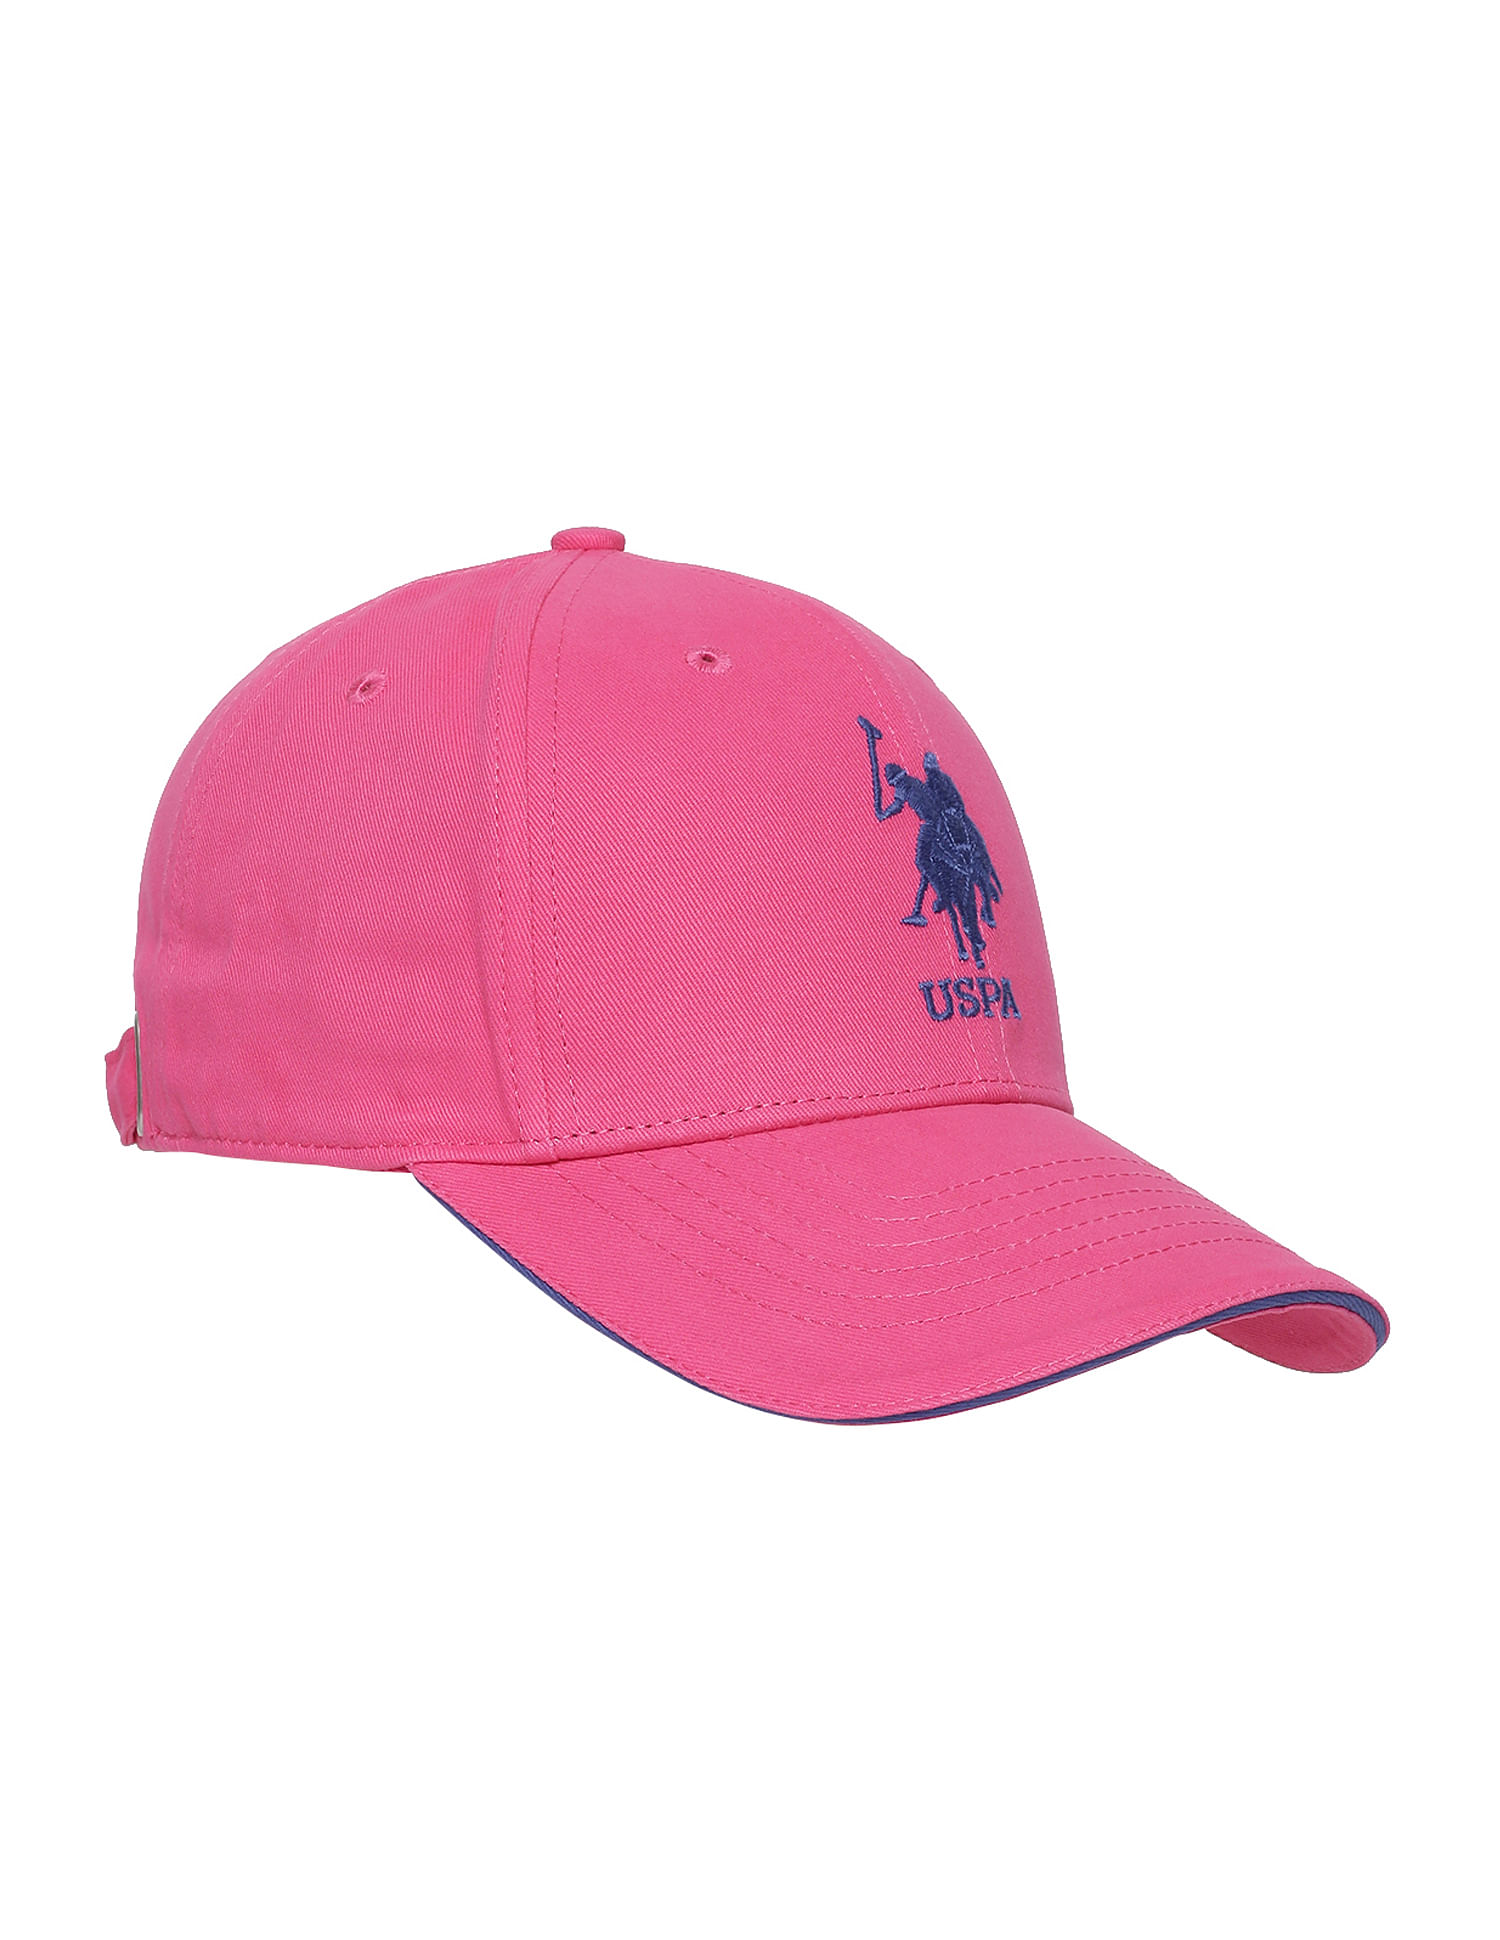 PINK CAP - 帽子